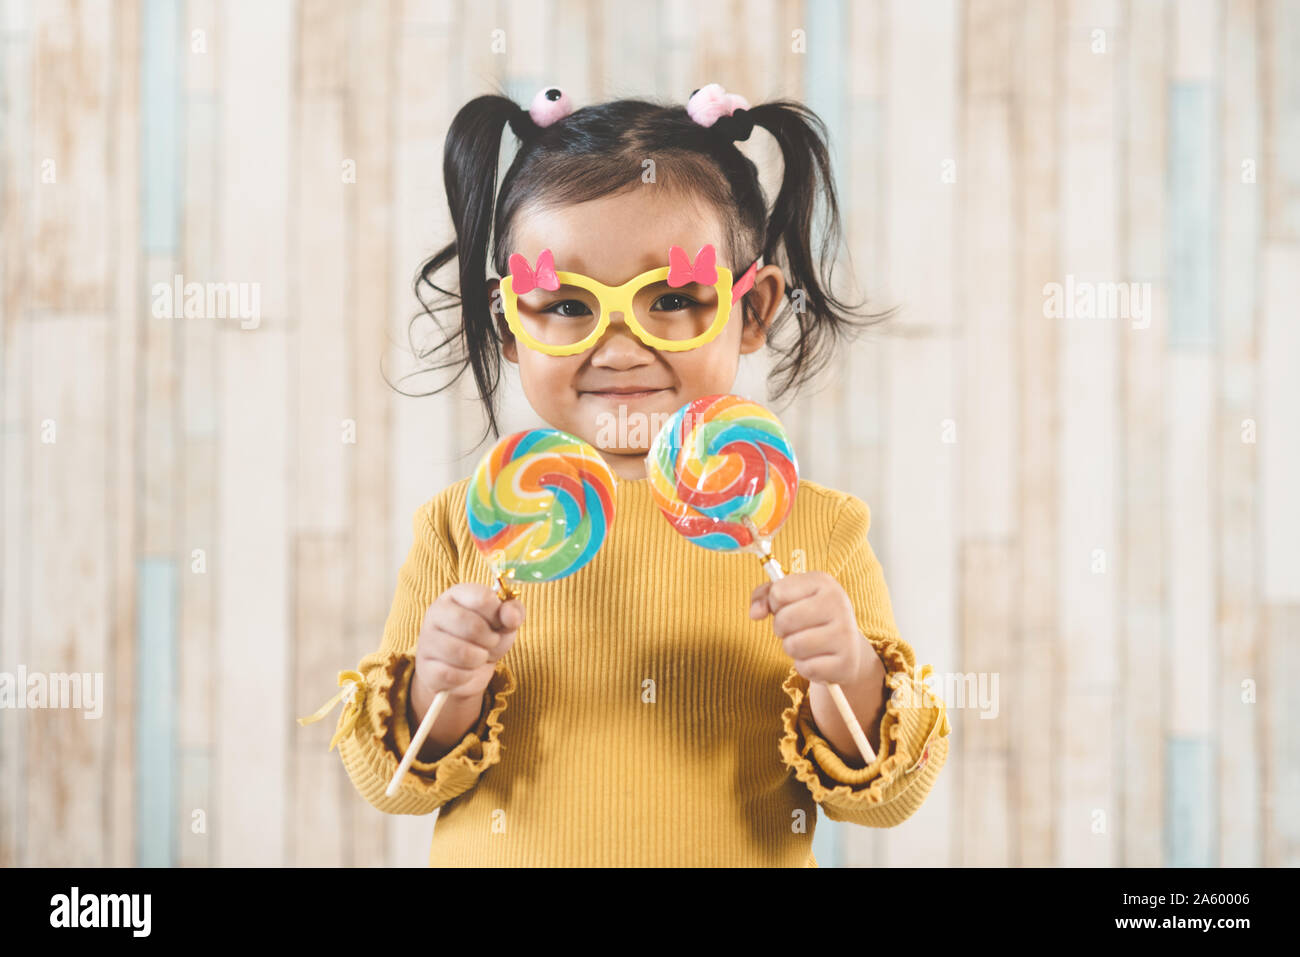 Süße kleine asiatische Mädchen halten und essen eine bunte Lollipop. Konzept der Mundpflege und Süßigkeiten Tag Stockfoto